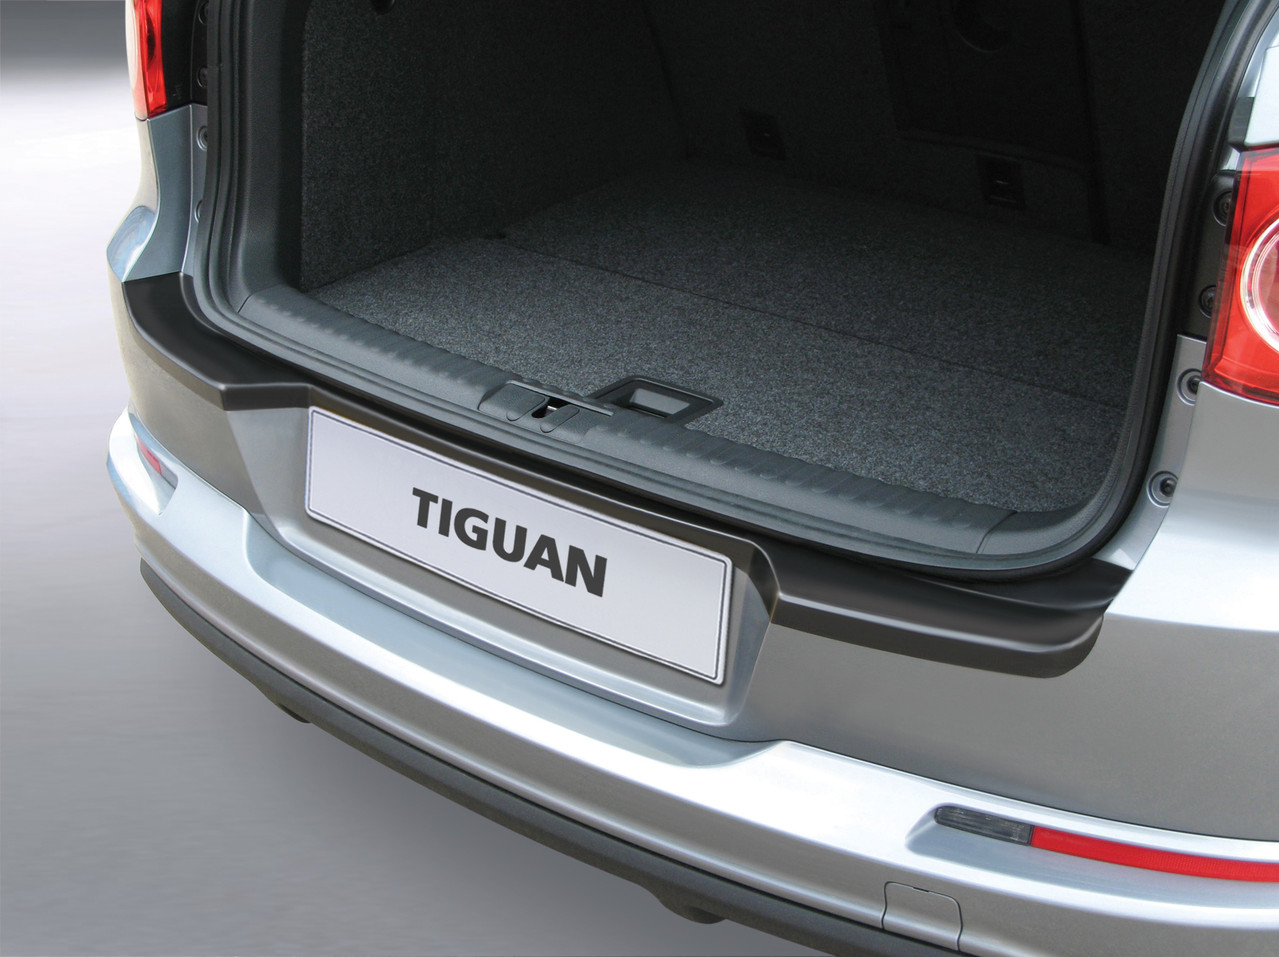 Ladekantenschutz für VW TIGUAN - Schutz für die Ladekante Ihres